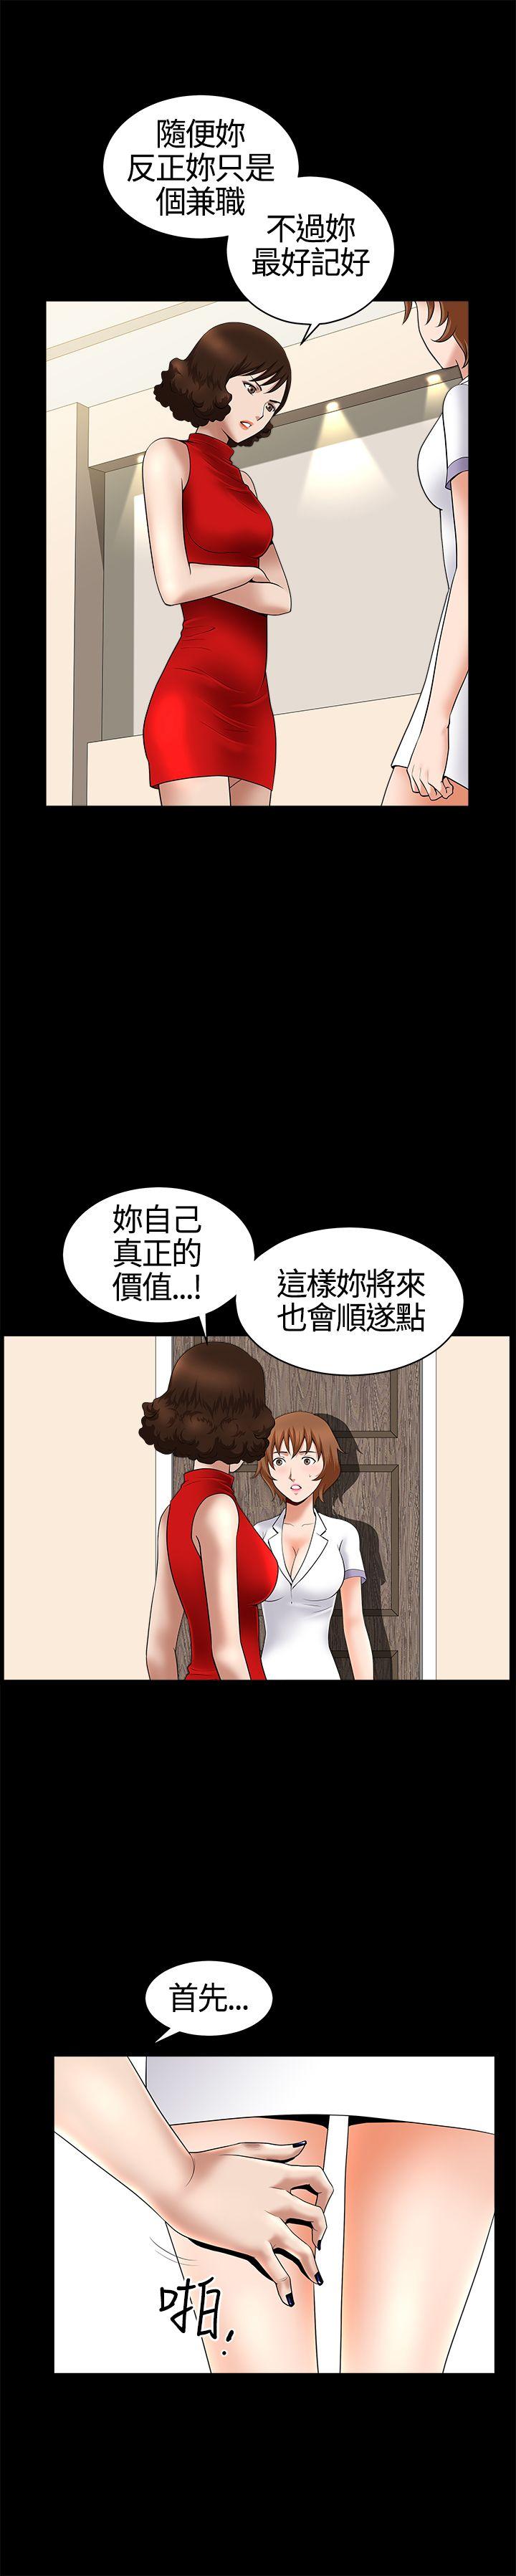 韩国污漫画 人妻性解放3:粗糙的手 第17话 16